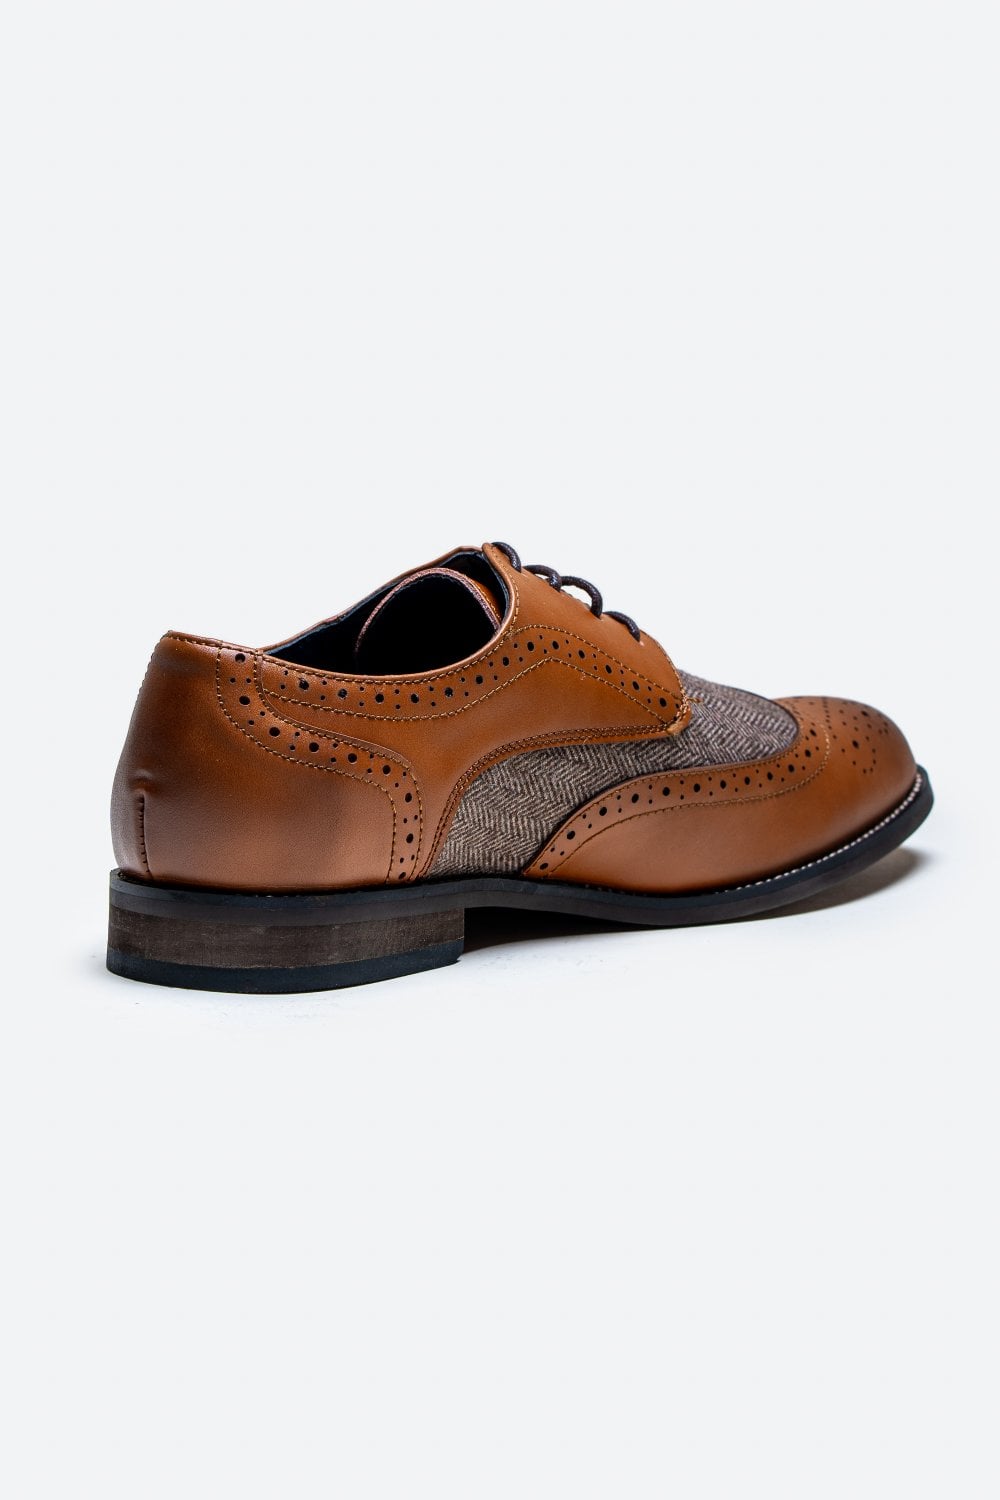 Cavani Oliver Tweed Schoenen - Brown - schoenen